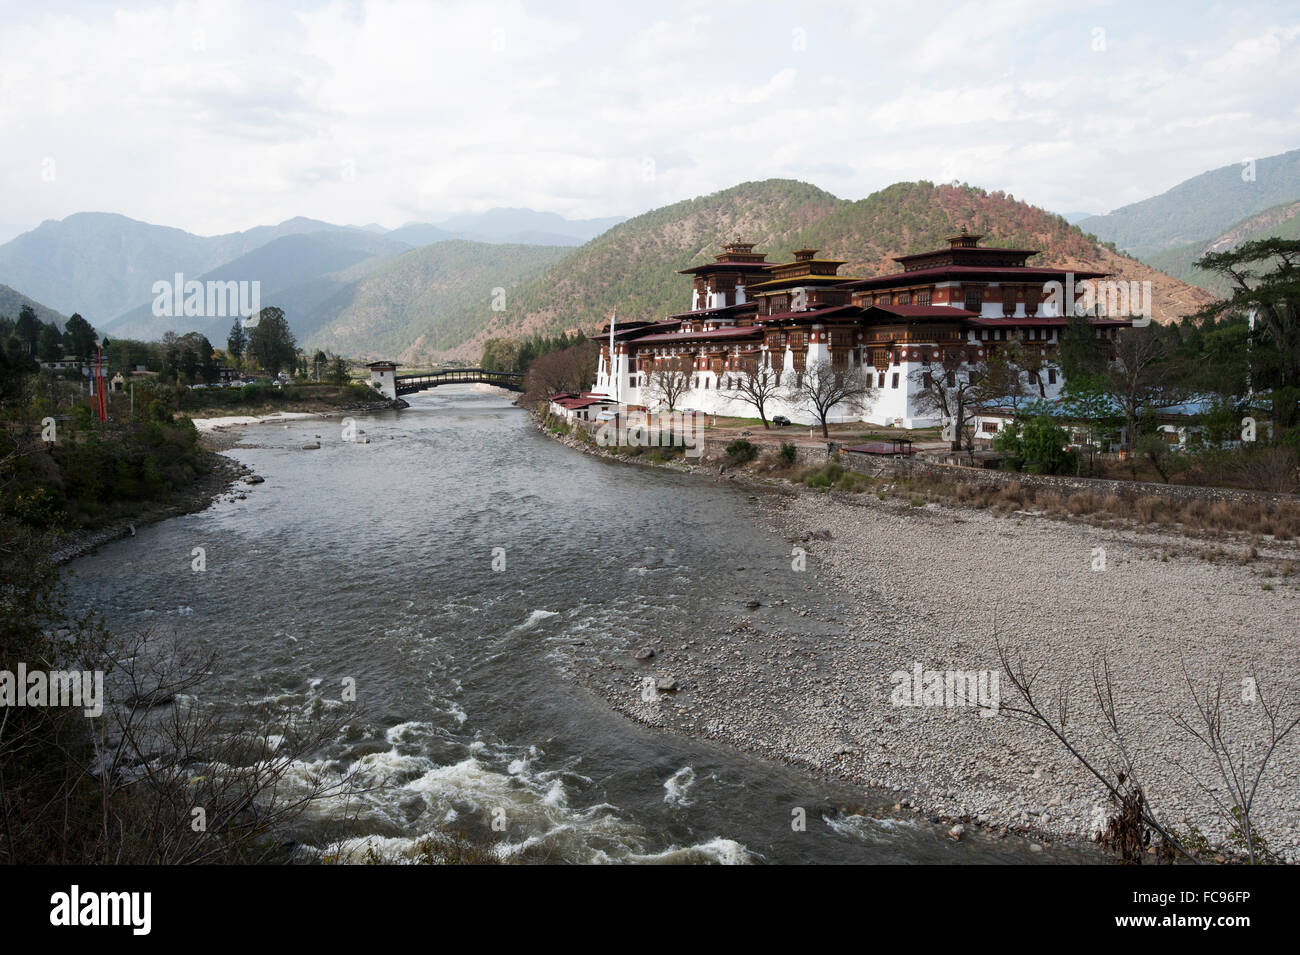 Punakha Dzong, ancienne capitale du Bhoutan, à la confluence de la Pho Chu (père) et Mo Chu (mère), rivières Punakha, Bhoutan Banque D'Images